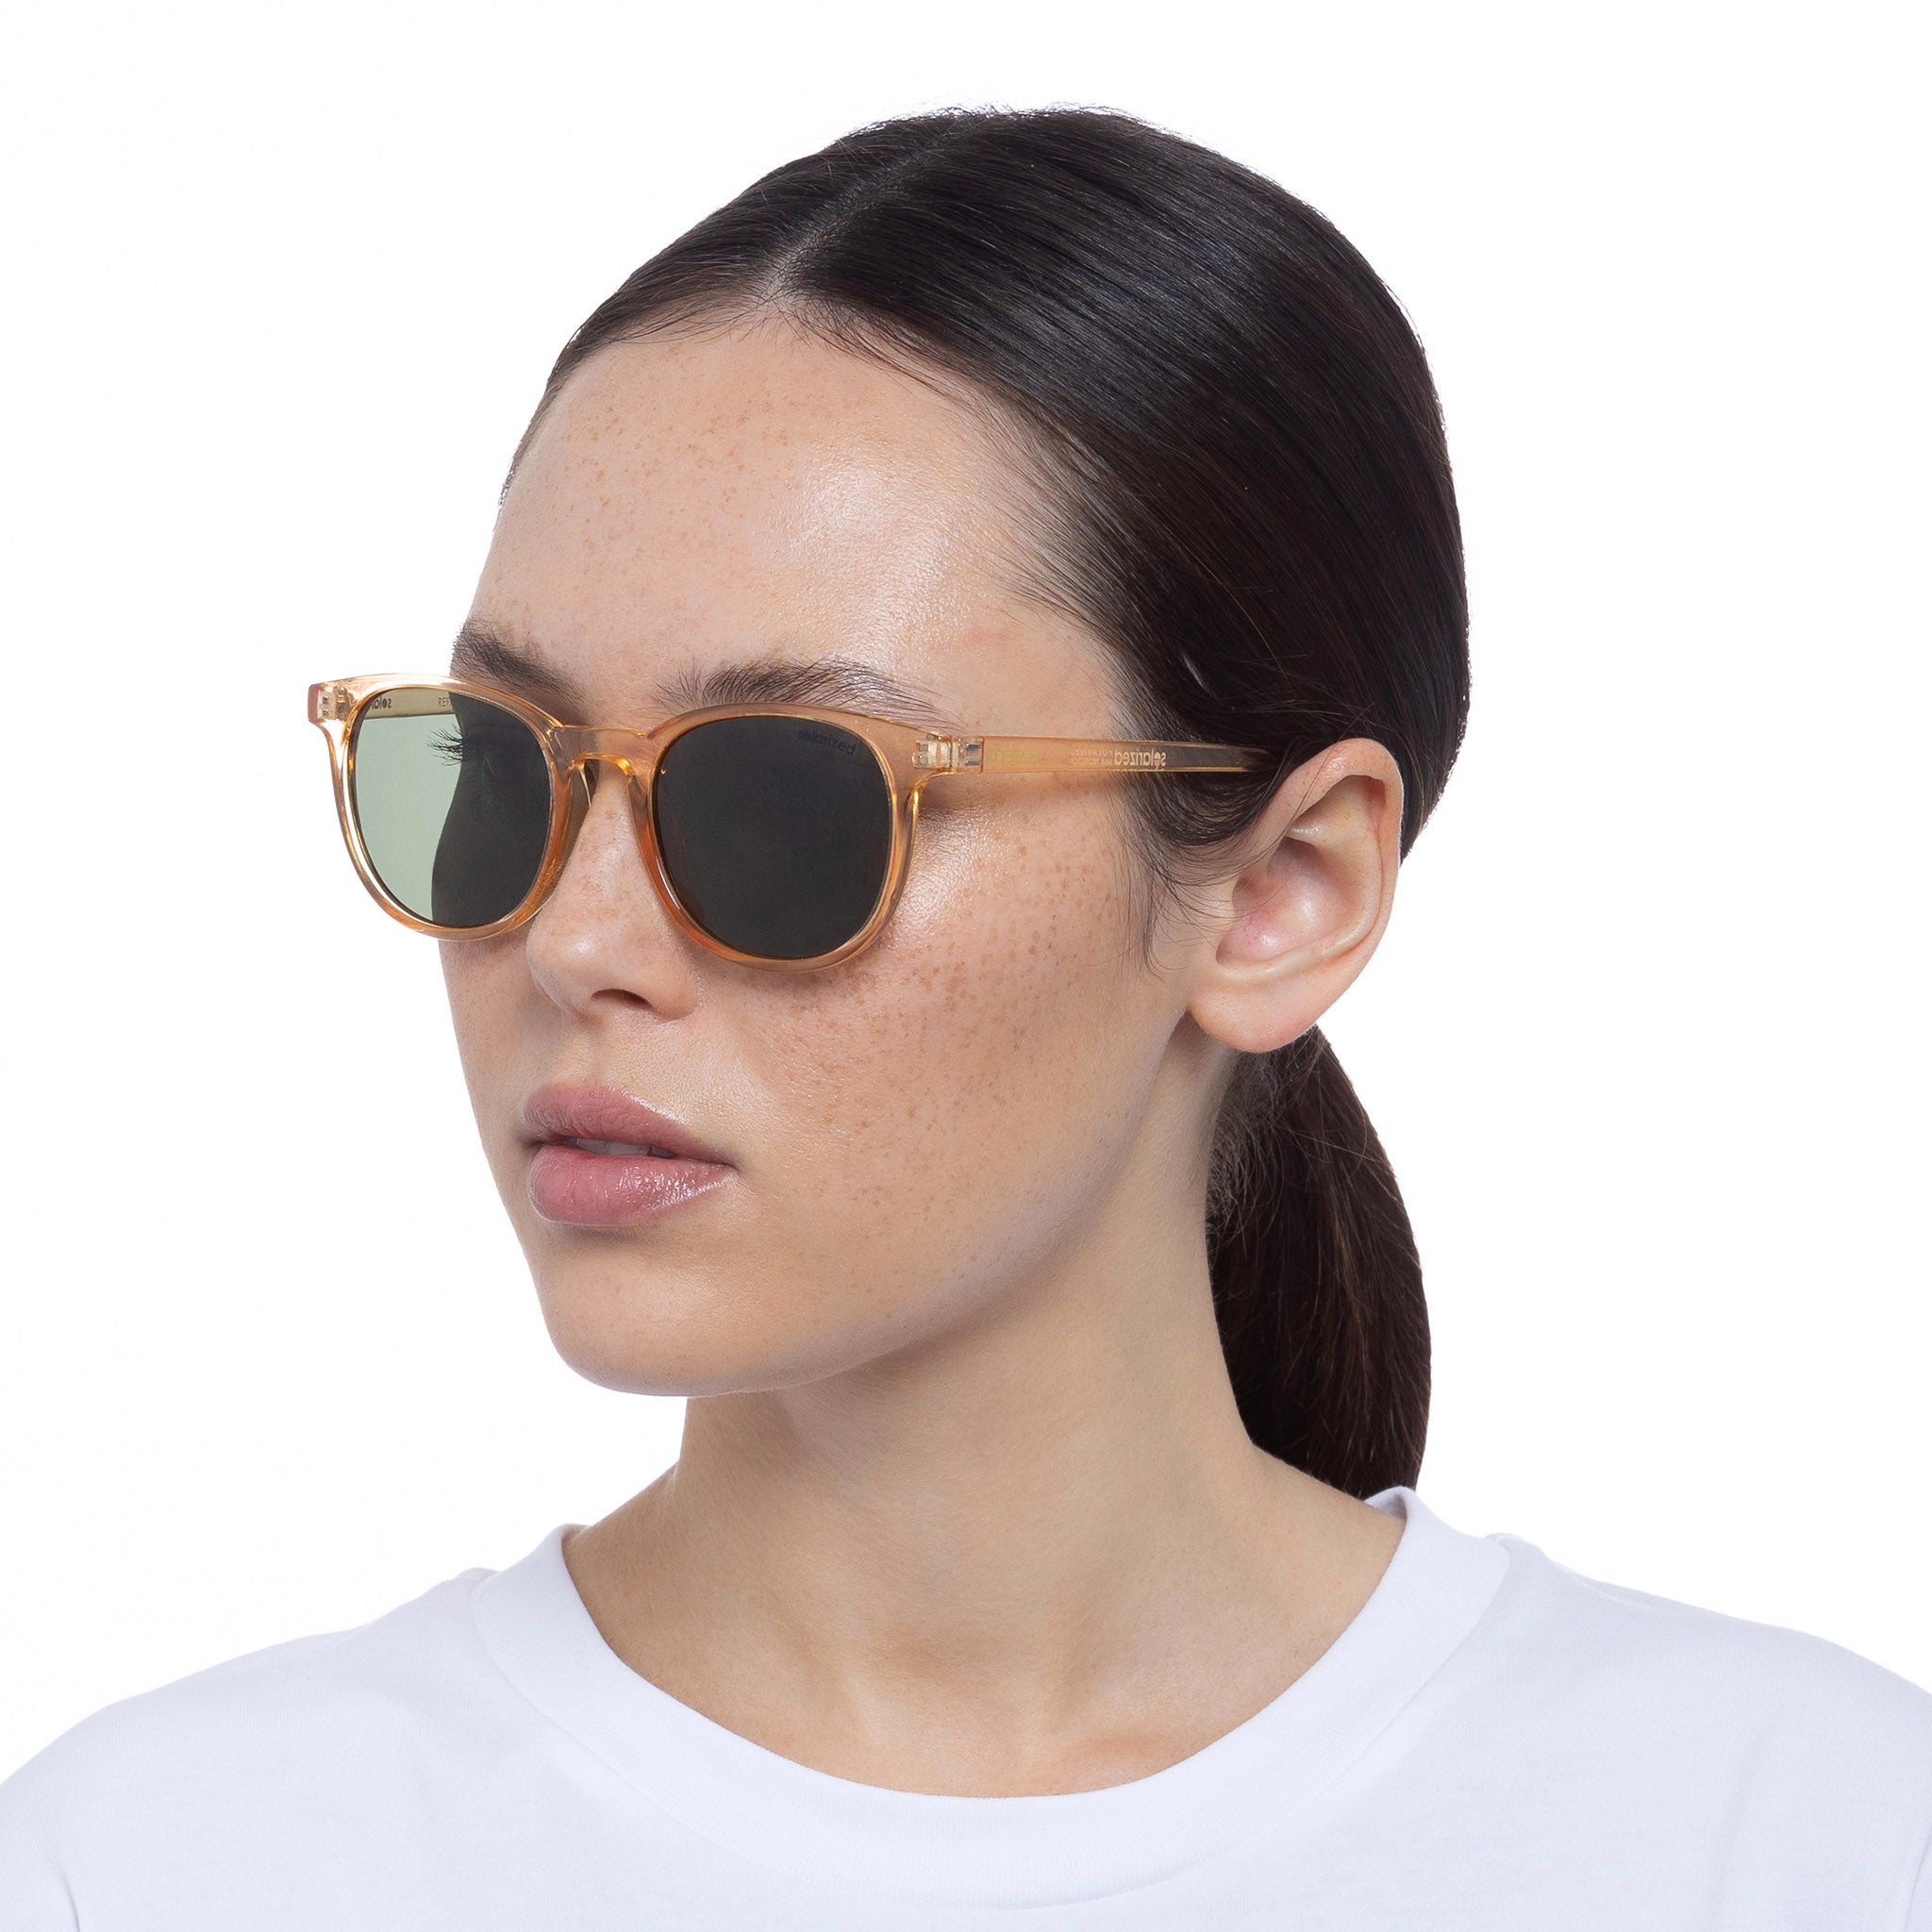 Solarized Uni Sex Refined Round Tan Round Sunglasses Eyewear Index 8271